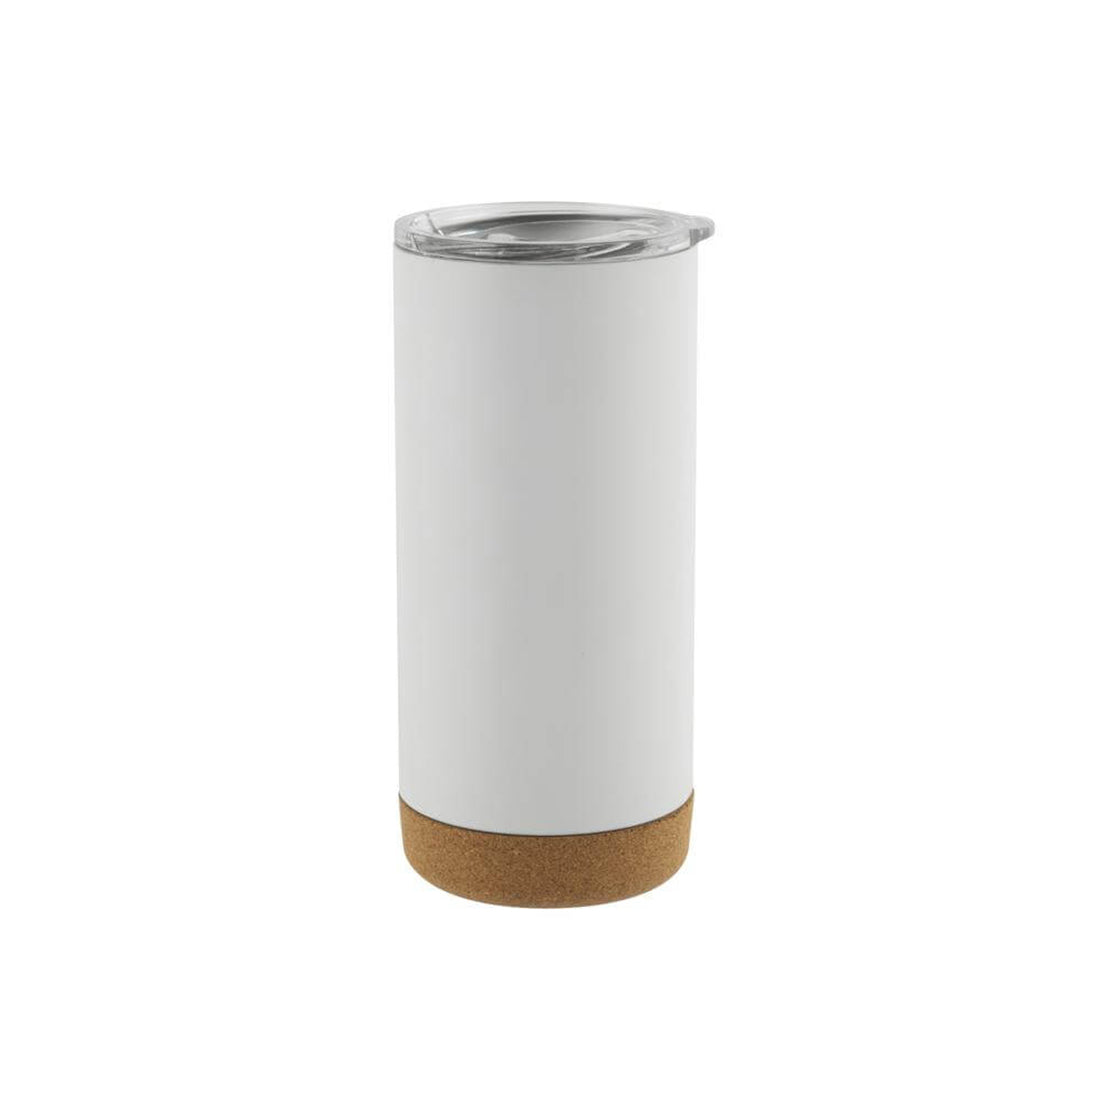 Giftology Insulated Mug  Tumbler With Cork-Base White